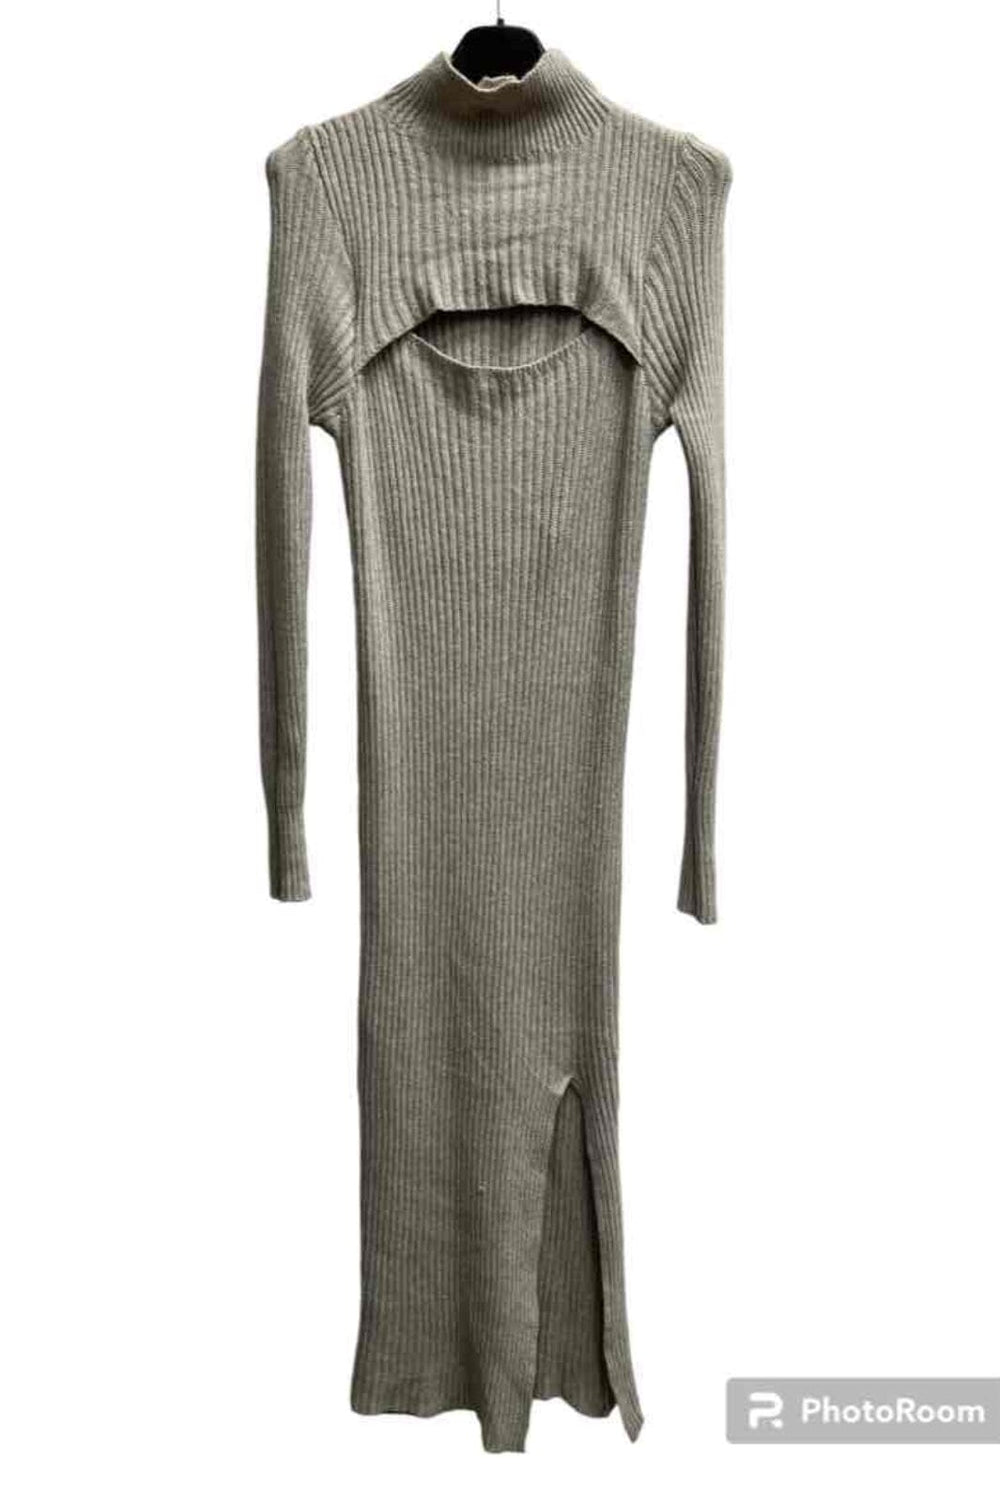 A-bee - Knit Dress 1370 - Beige Kjoler 